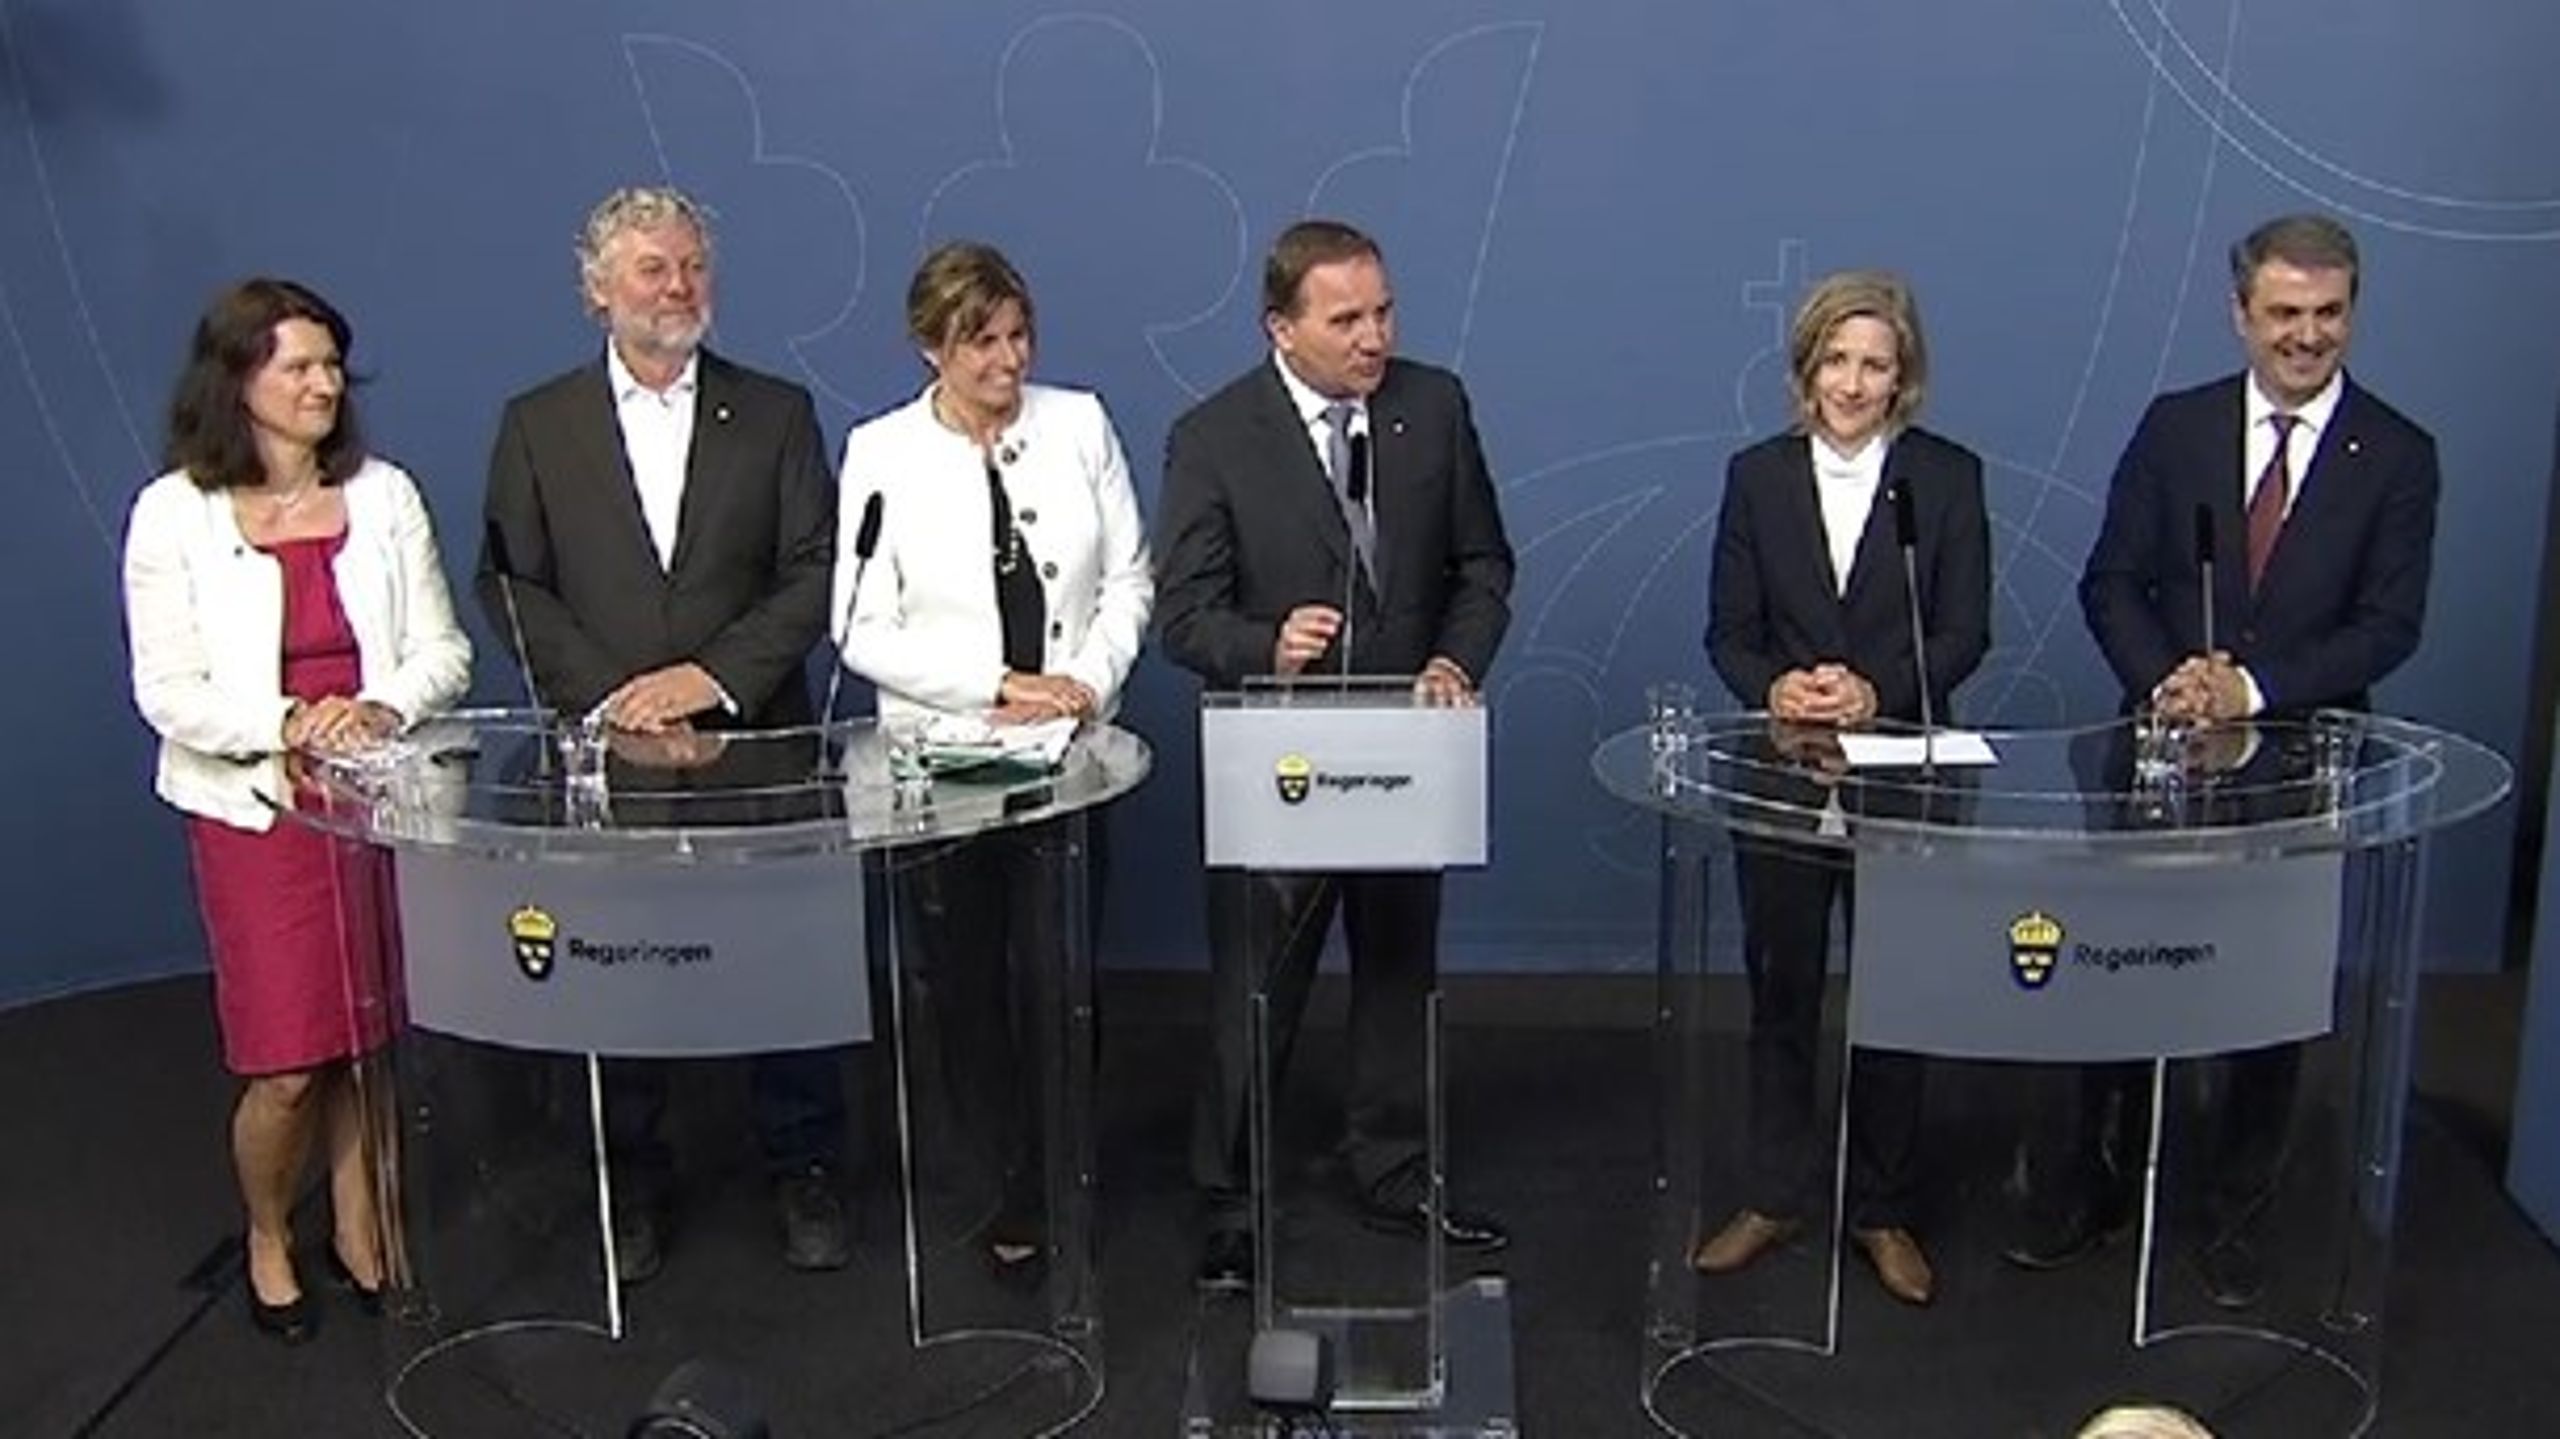 <br>På onsdagen presenterades &nbsp;nya ministrar och förändringar i regeringen.
 Från vänster:&nbsp;Ann Linde, Peter Eriksson, Isabella Lövin, Stefan Löfven, Karolina Skog 
och Ibrahim Baylan.<br>